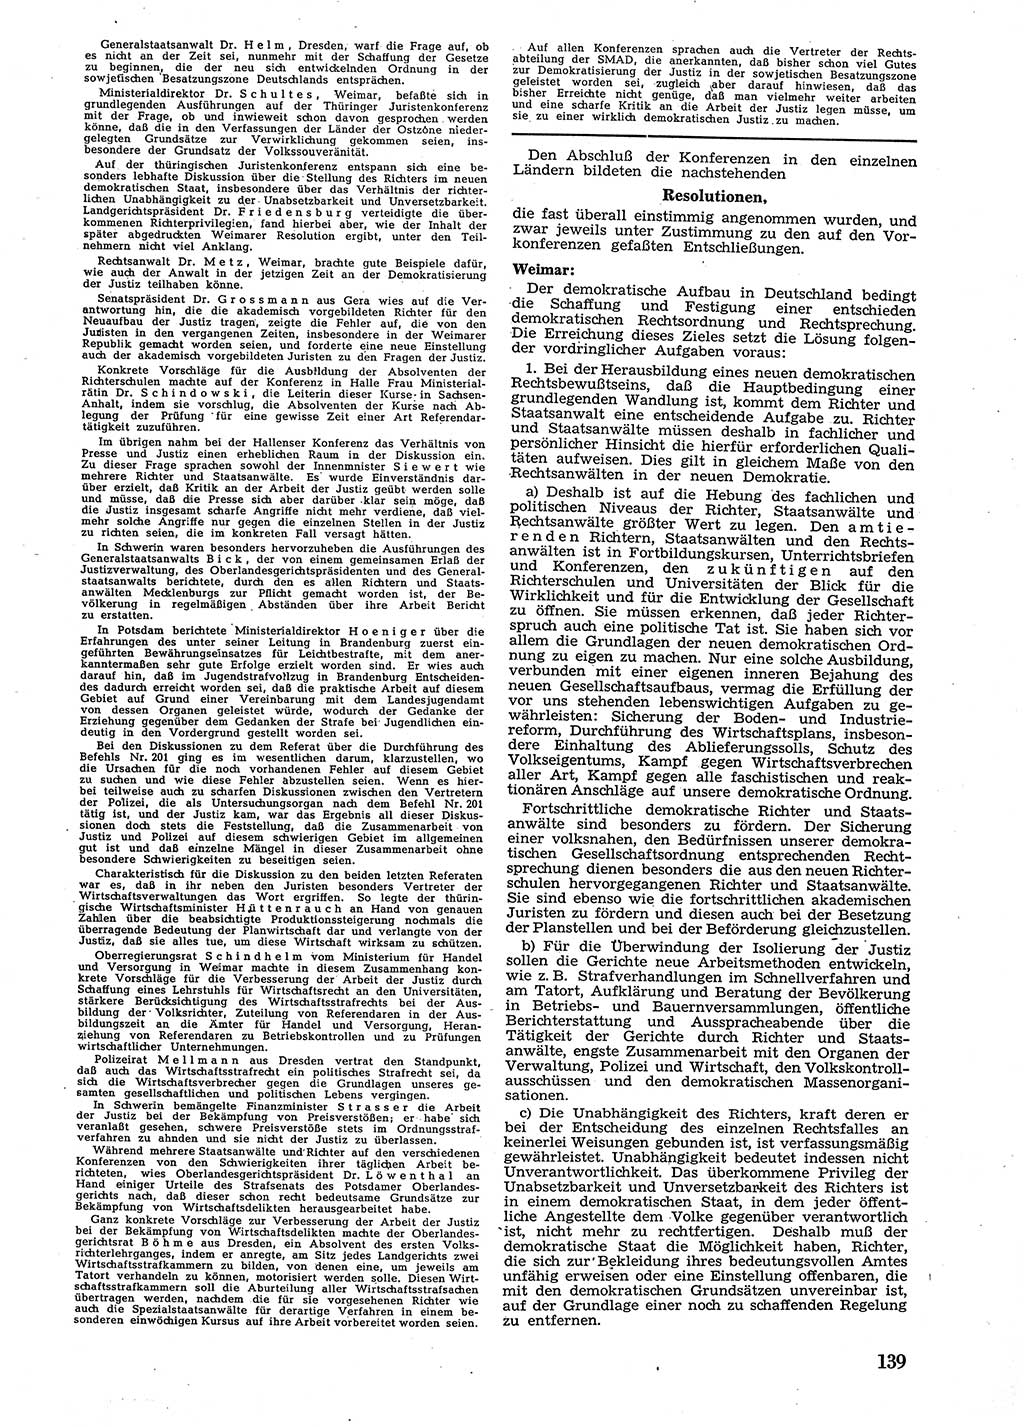 Neue Justiz (NJ), Zeitschrift für Recht und Rechtswissenschaft [Sowjetische Besatzungszone (SBZ) Deutschland], 2. Jahrgang 1948, Seite 139 (NJ SBZ Dtl. 1948, S. 139)